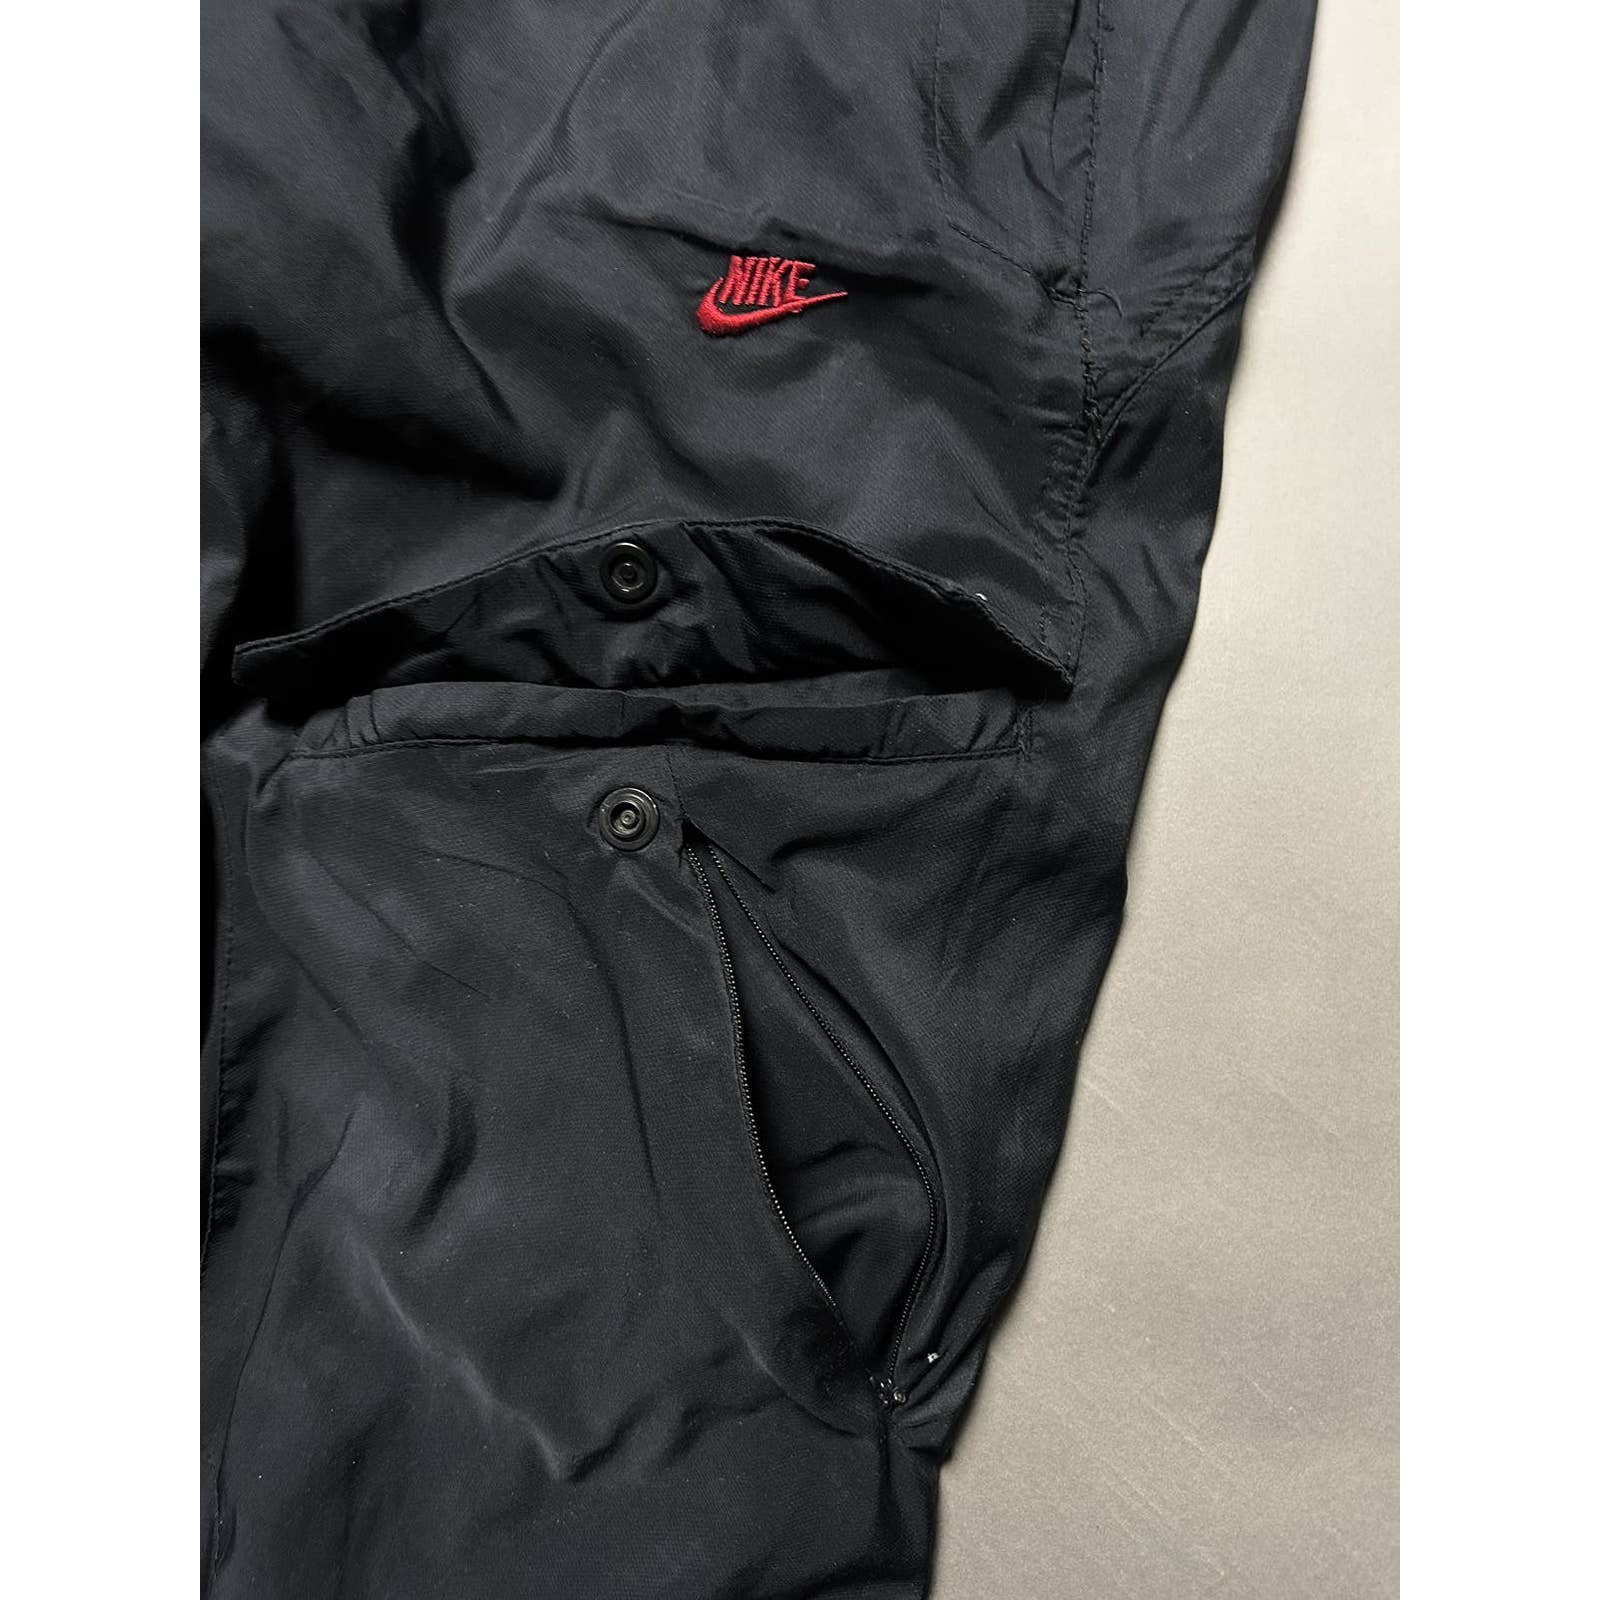 Authentic Nike parachute pants Red - black Sportwear 🎾 ÉTAT / EXCELLENT 🎾  SIZE / M 🎾 PRICE 💸 : 4000 DA